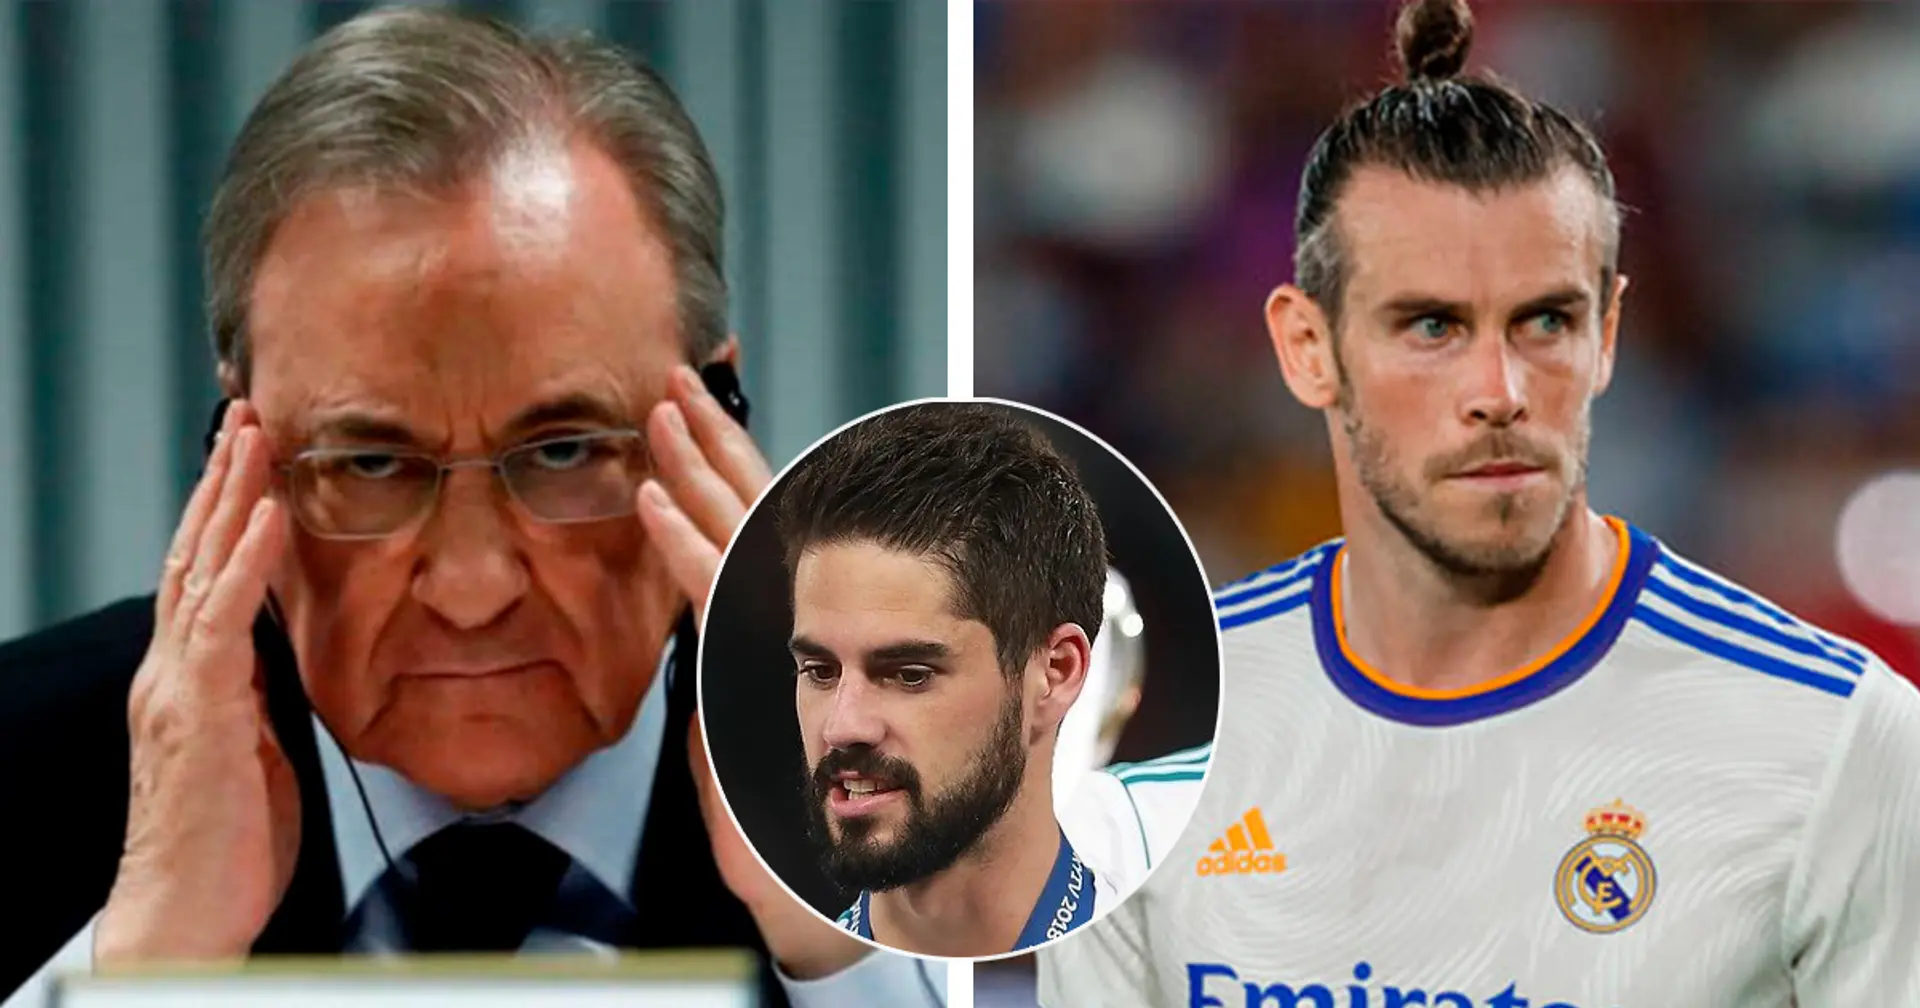 Il Real Madrid ha messo sul mercato 6 giocatori, tra cui Bale e Isco